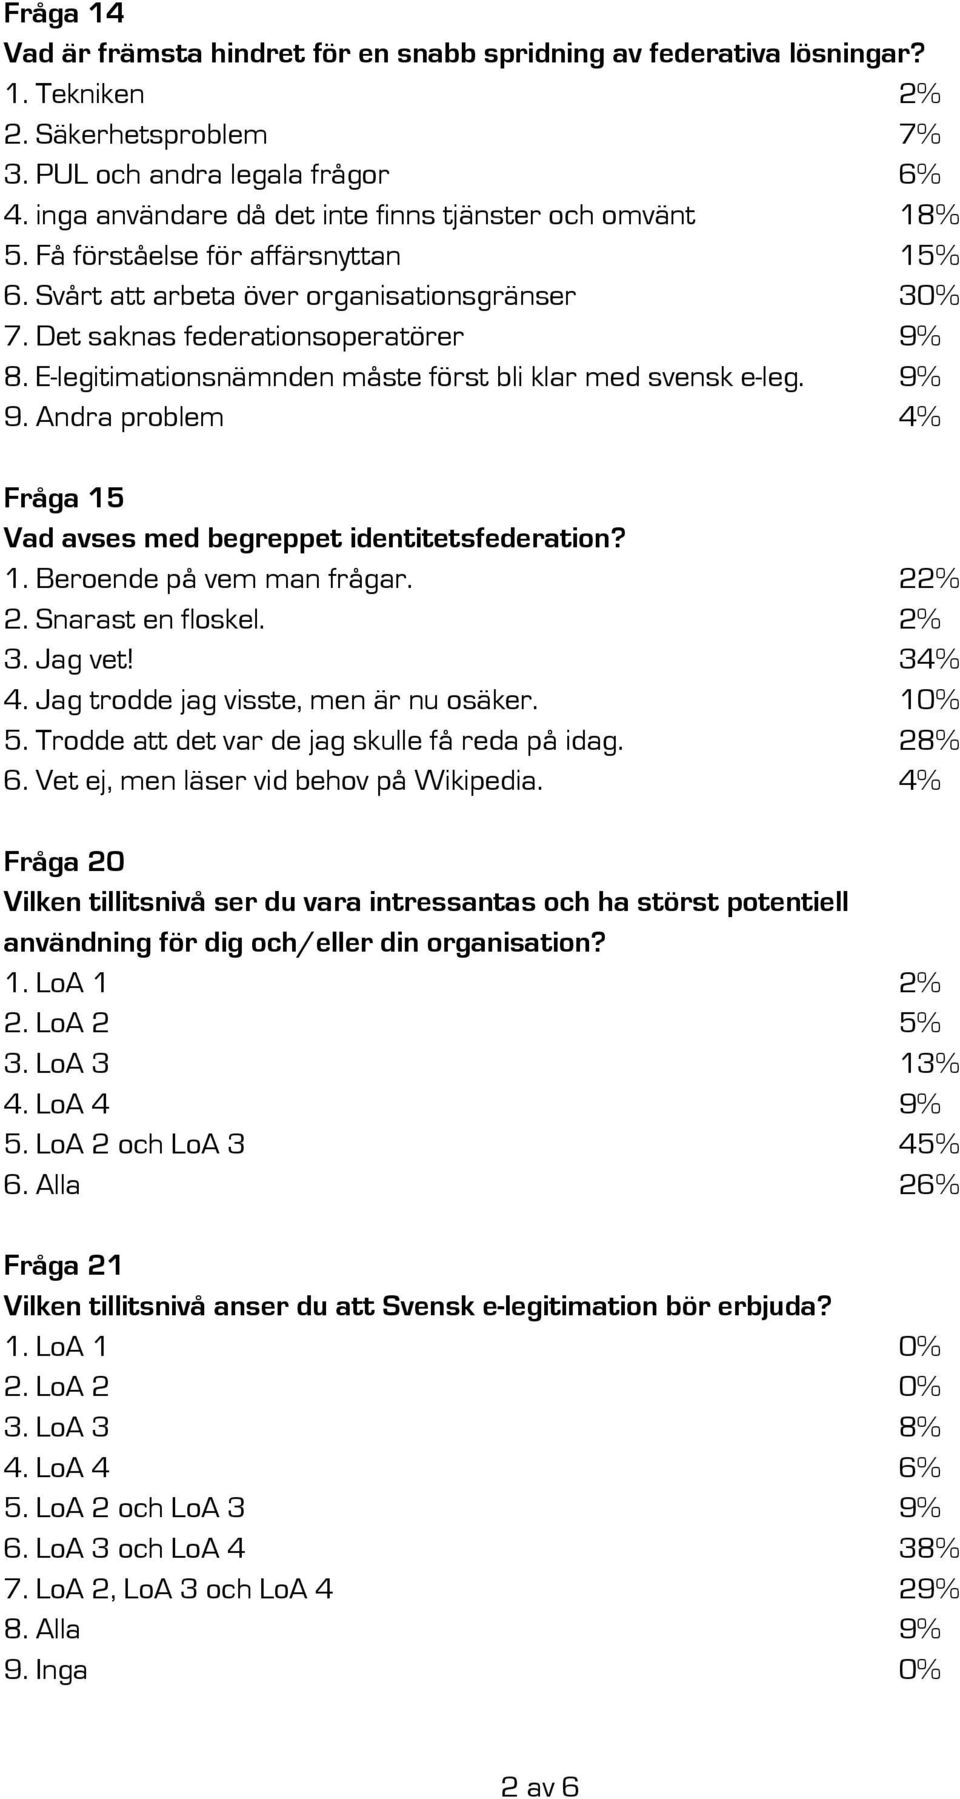 E-legitimationsnämnden måste först bli klar med svensk e-leg. 9% 9. Andra problem 4% Fråga 15 Vad avses med begreppet identitetsfederation? 1. Beroende på vem man frågar. 22% 2. Snarast en floskel.